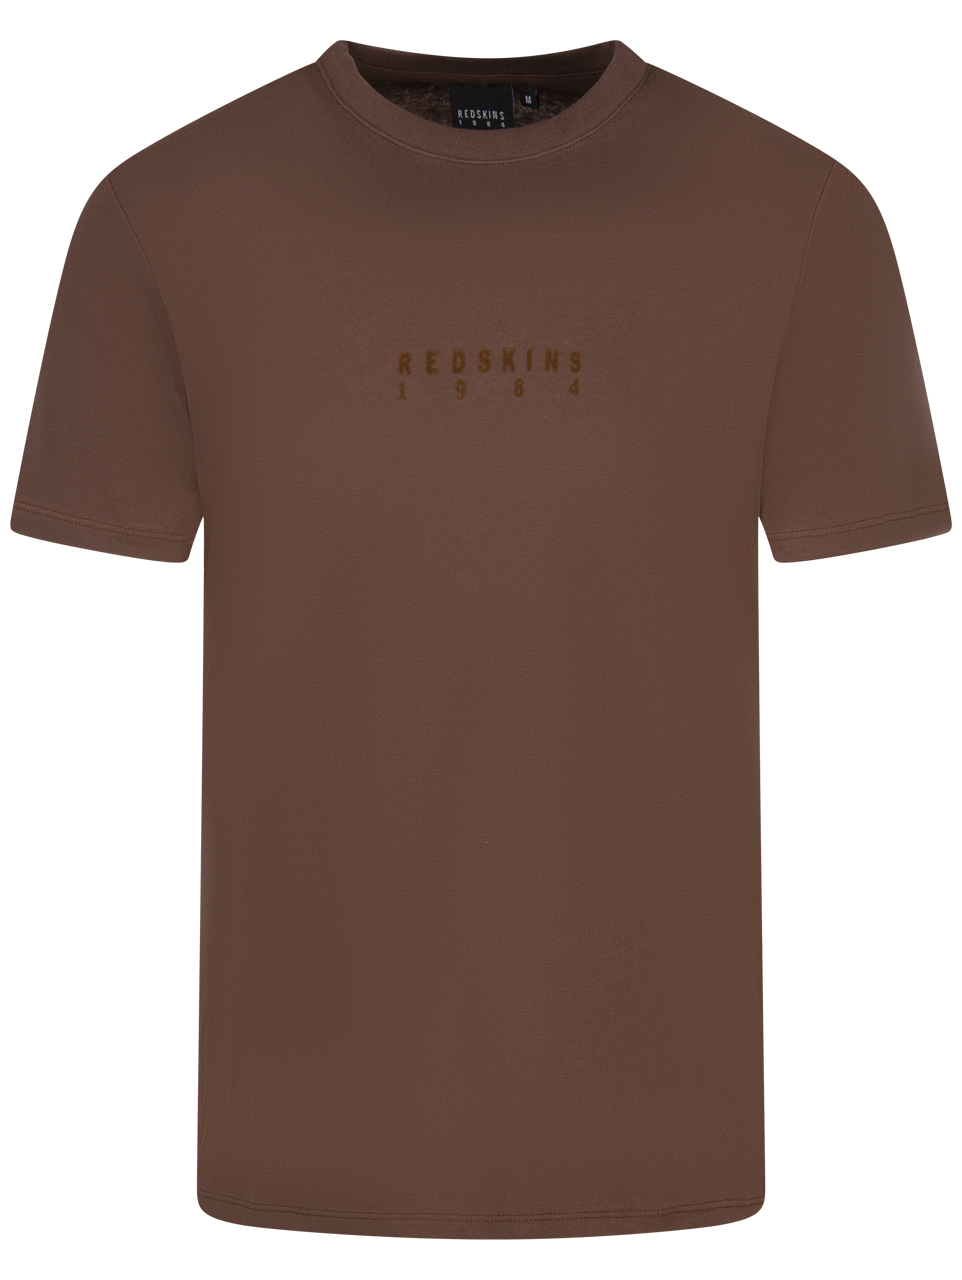 t-shirt redskins coton avec manches courtes et col rond chocolat